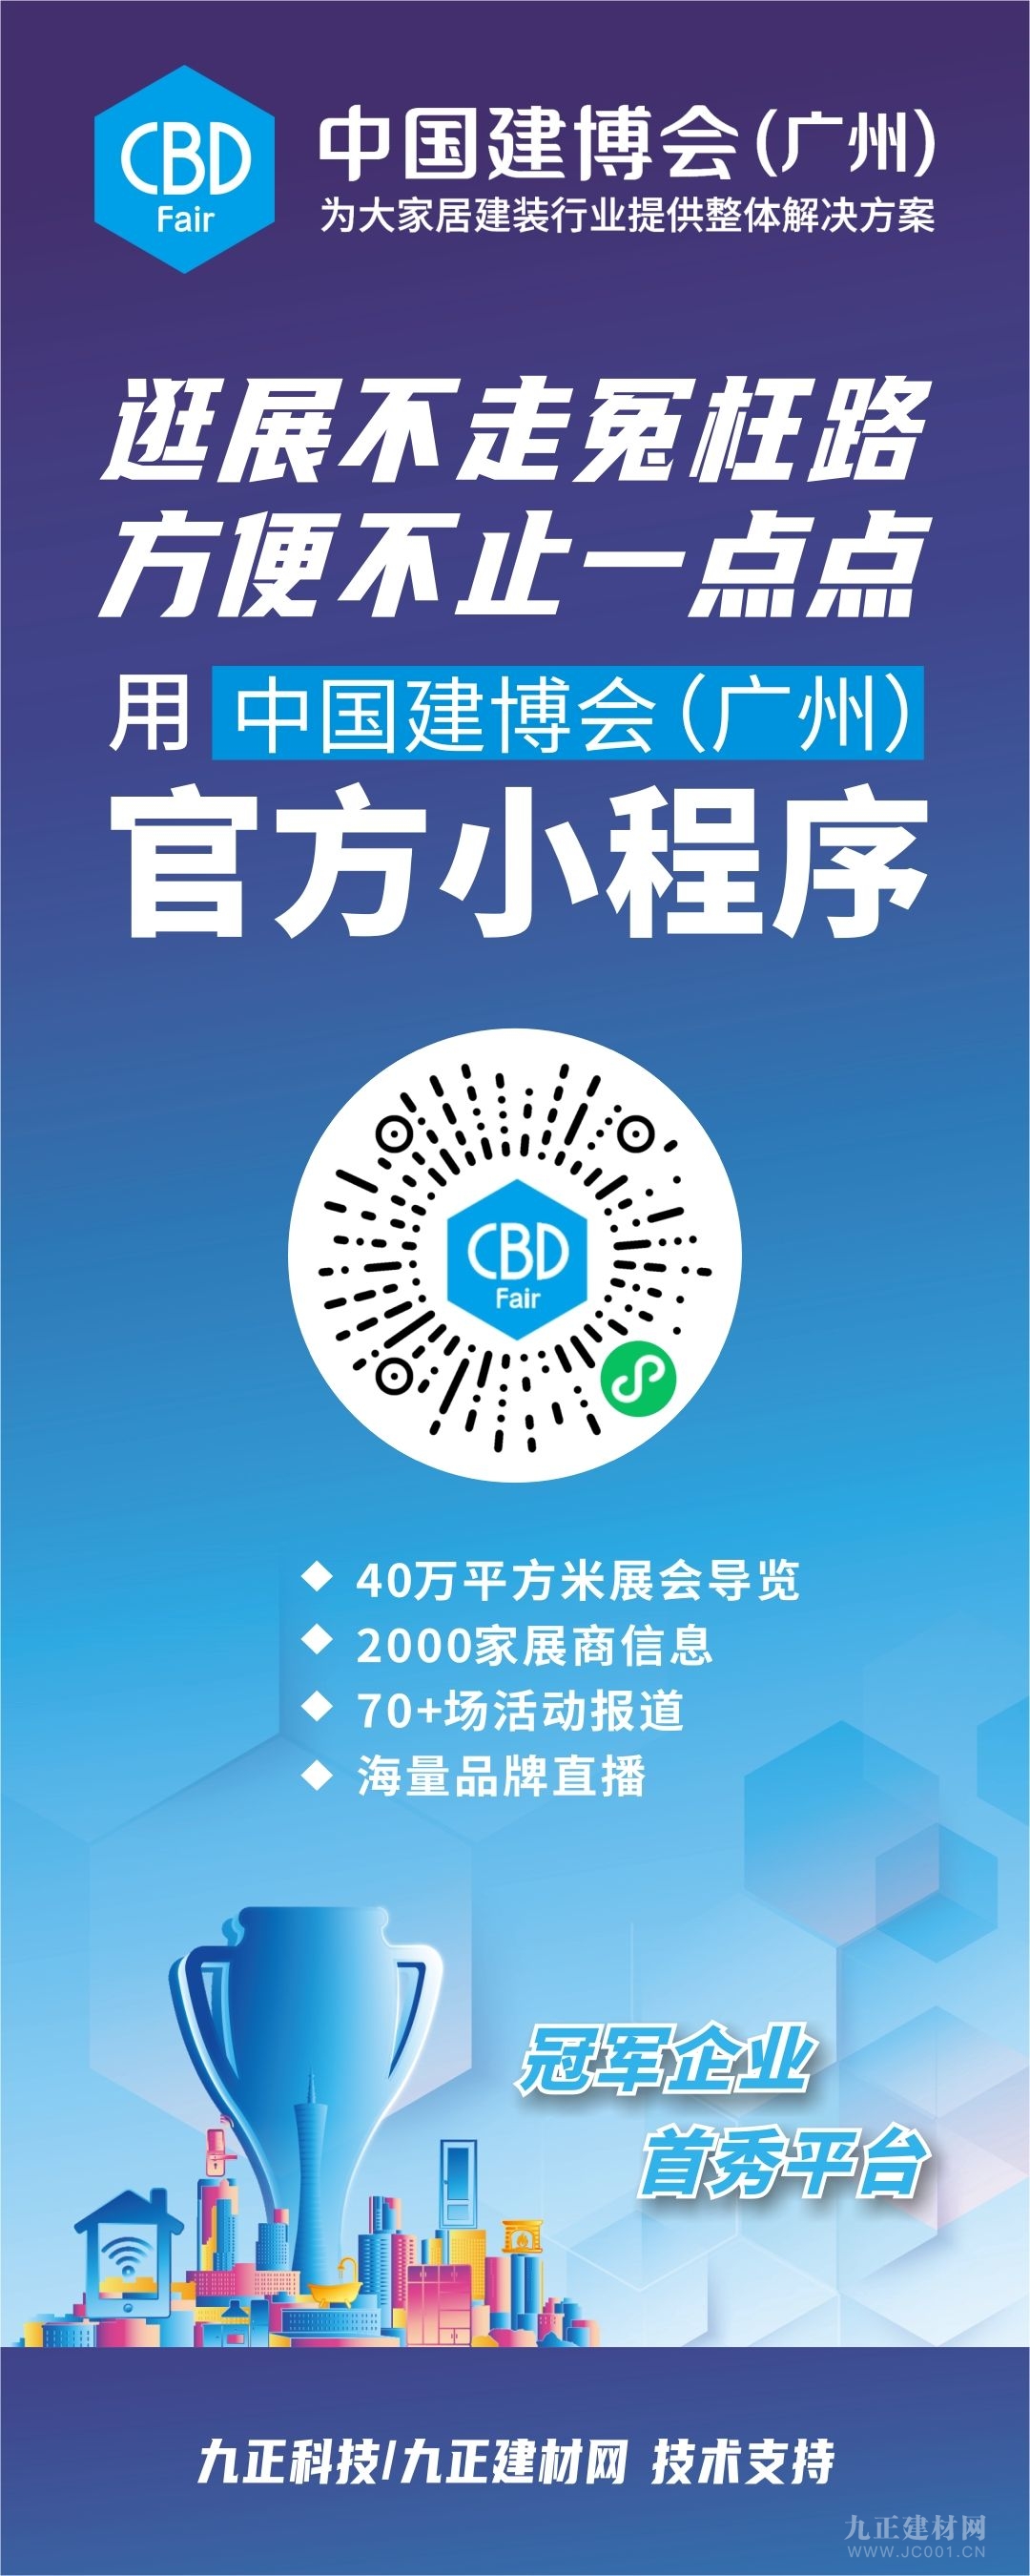  CBD Fair | 如“7”而至，中国建博会约您先在官方云展平台相见